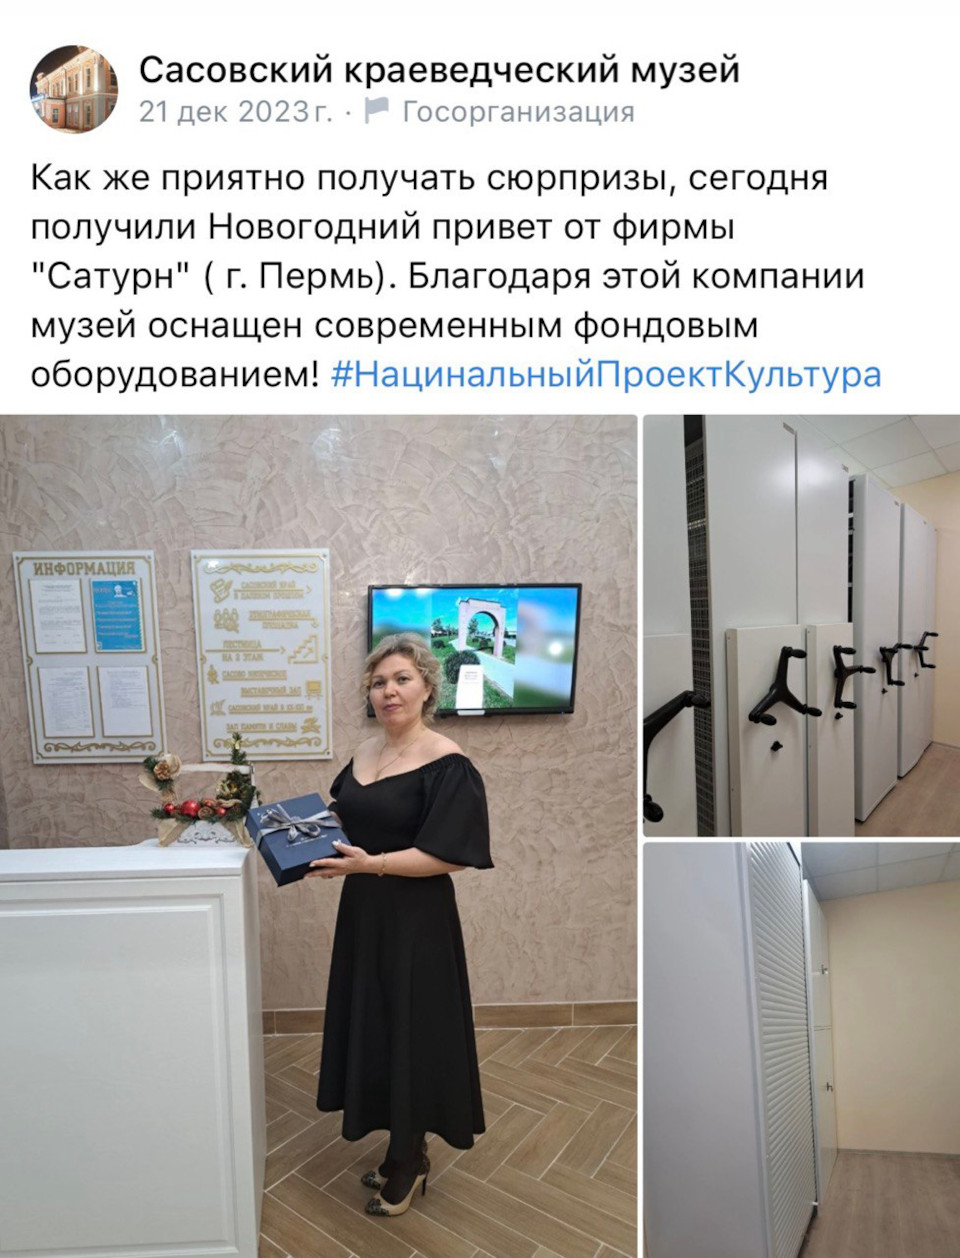 Получили приятные отзывы и слова благодарности от сотрудников  МБУ Сасовского историко-краеведческого музея.